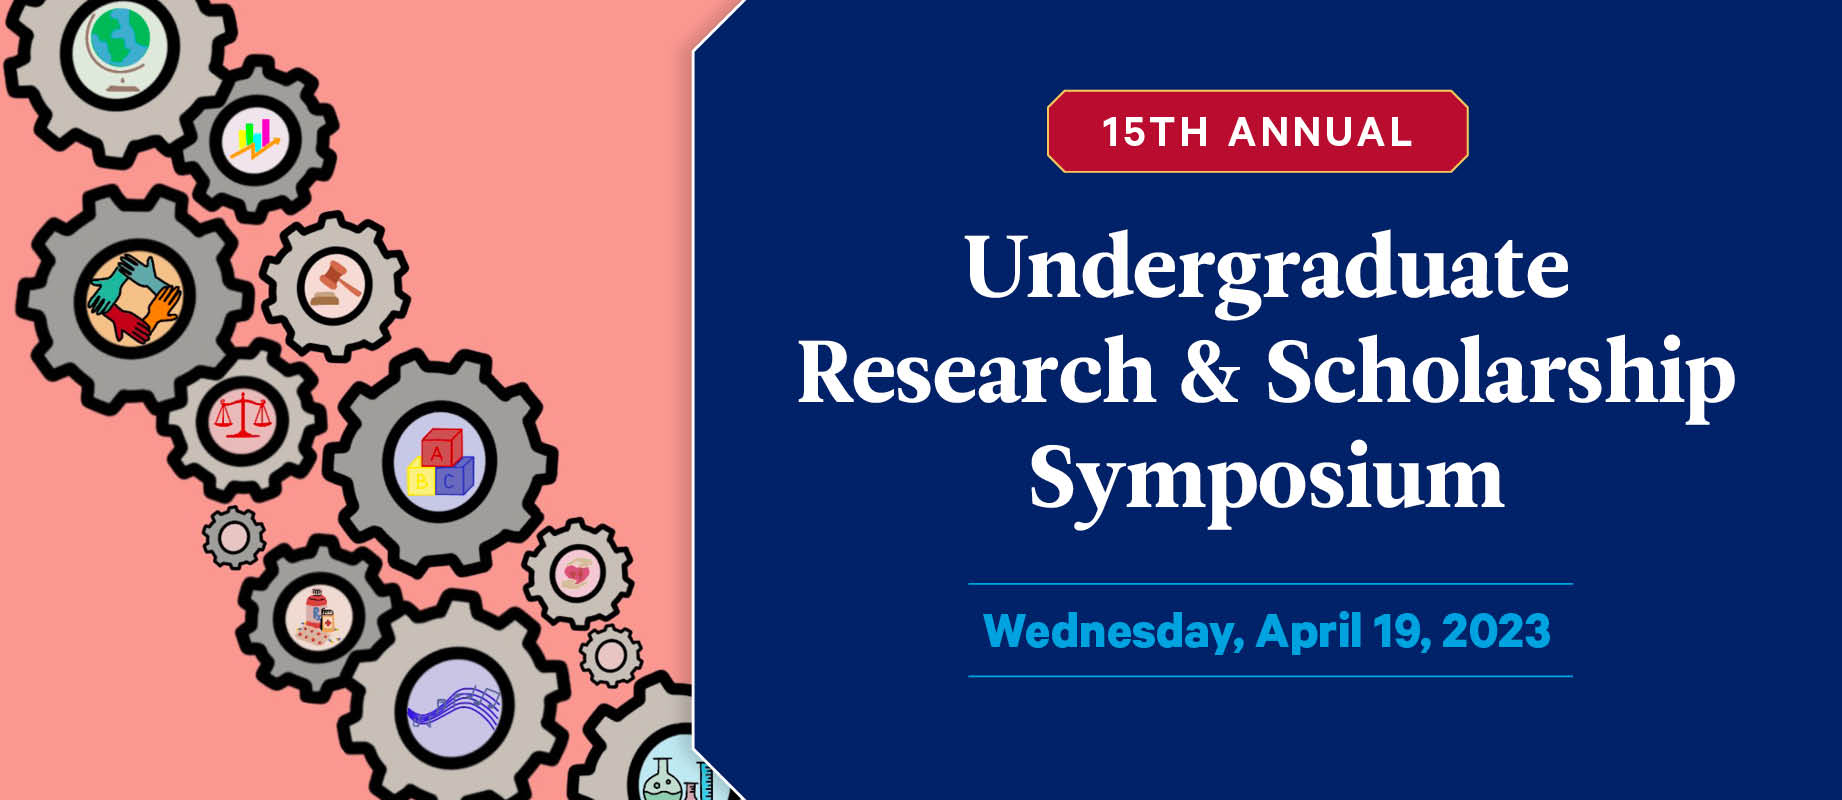 15th Annual Undergraduate Research & Scholarship Symposium